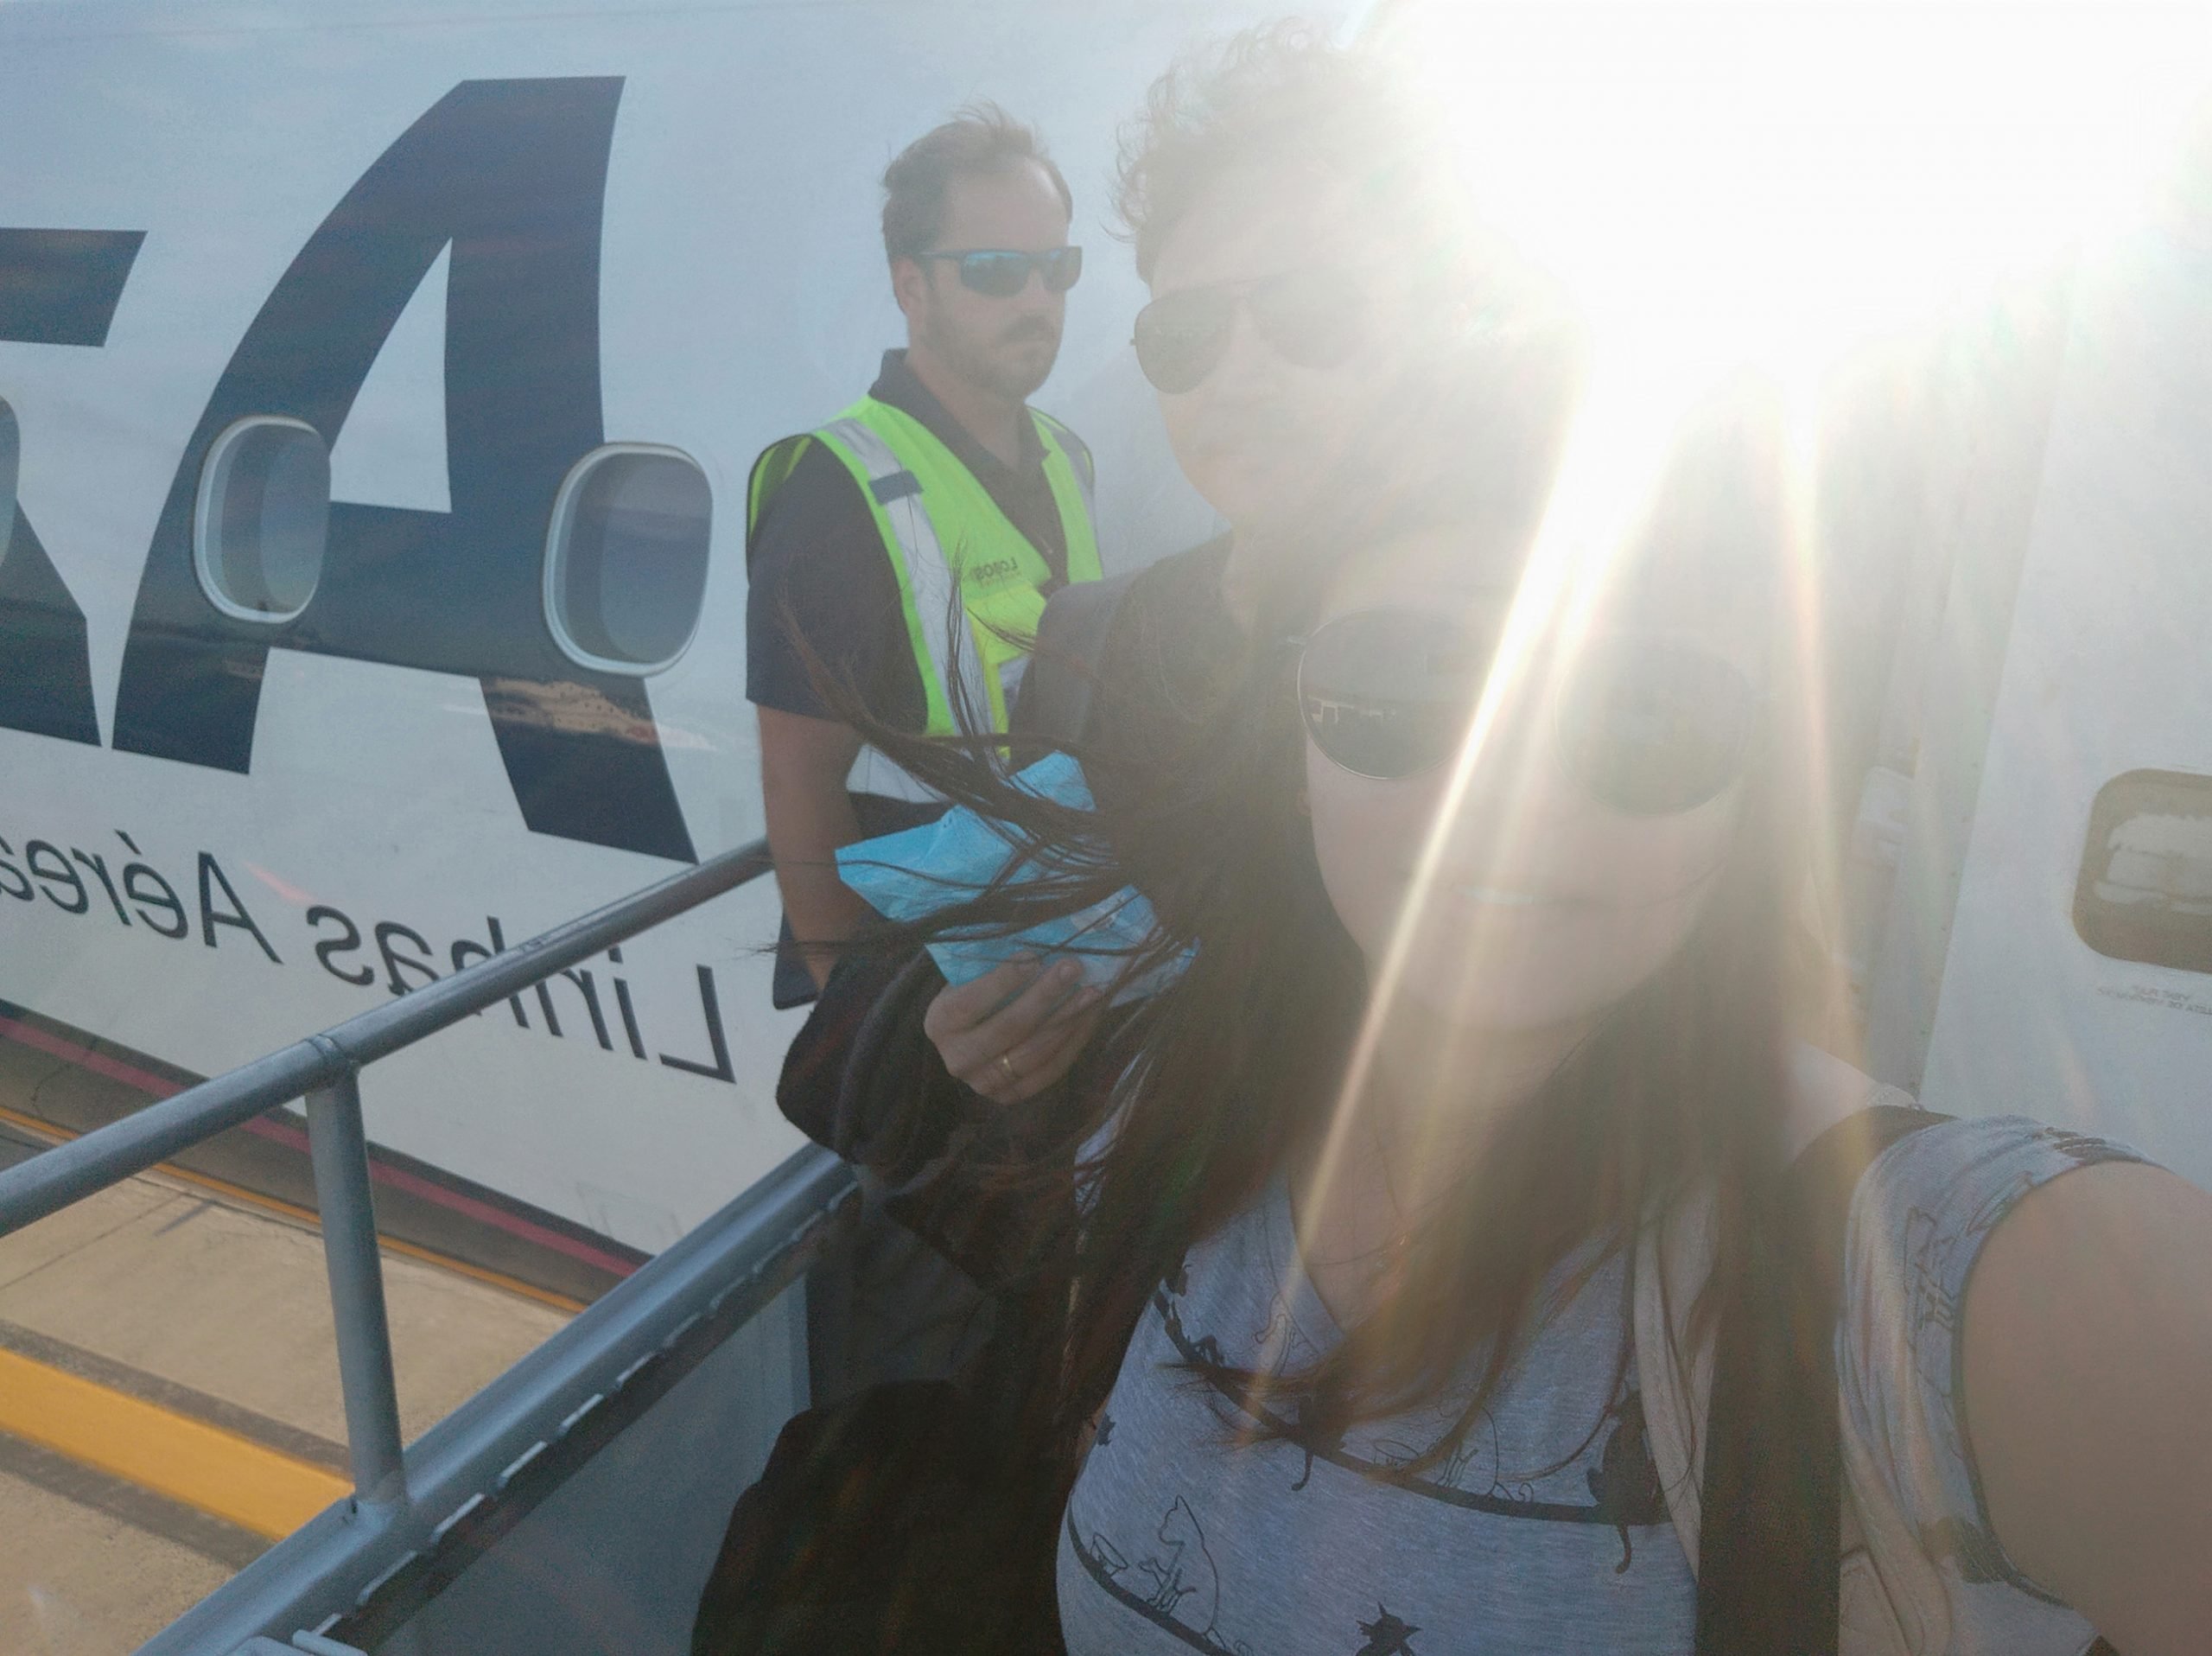 vôo de Foz do Iguaçu para o Rio de Janeiro